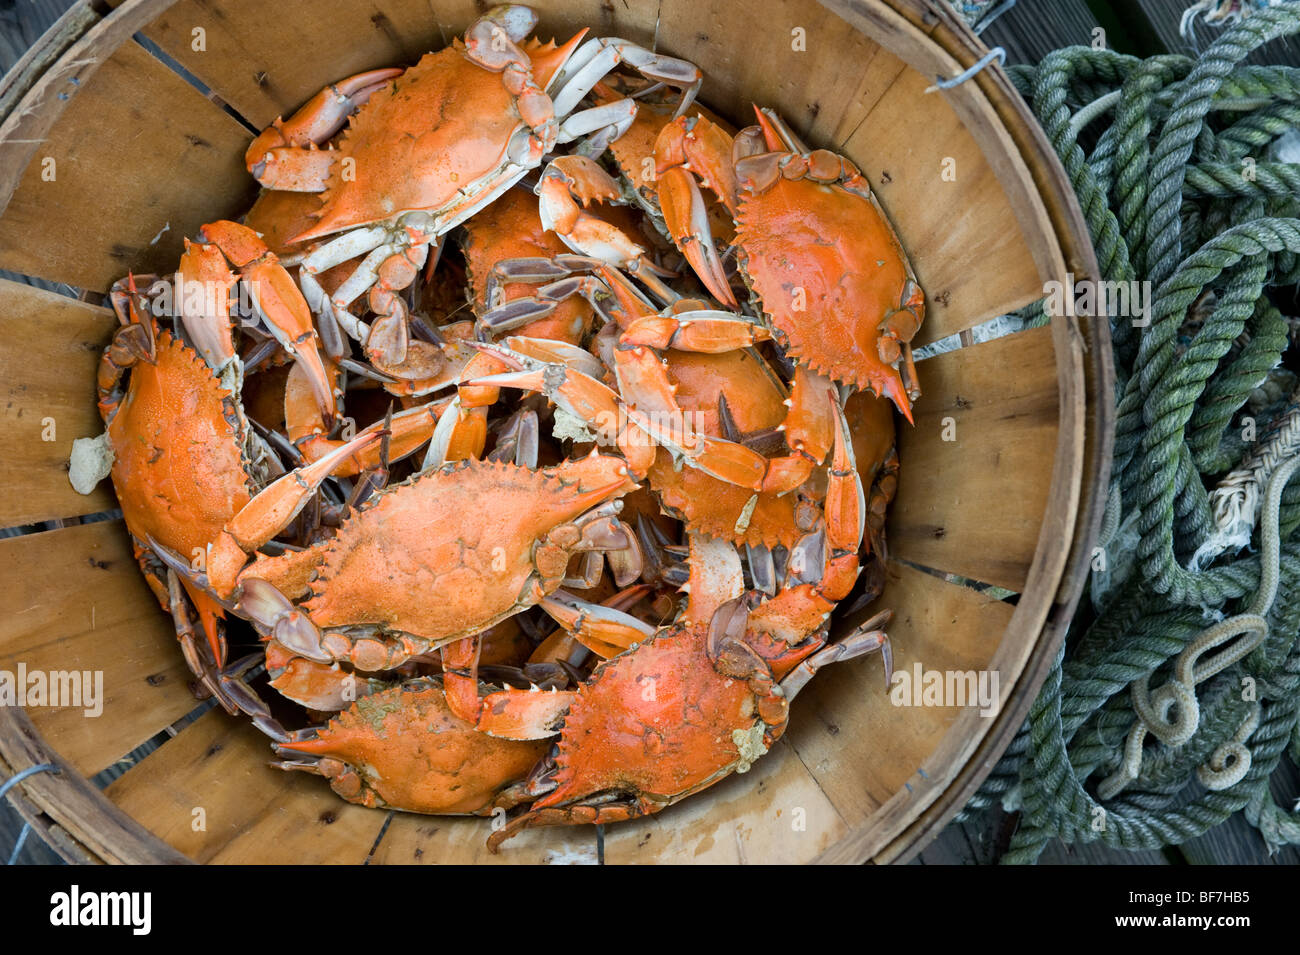 bushel basket of crabs Stock Photo - Alamy